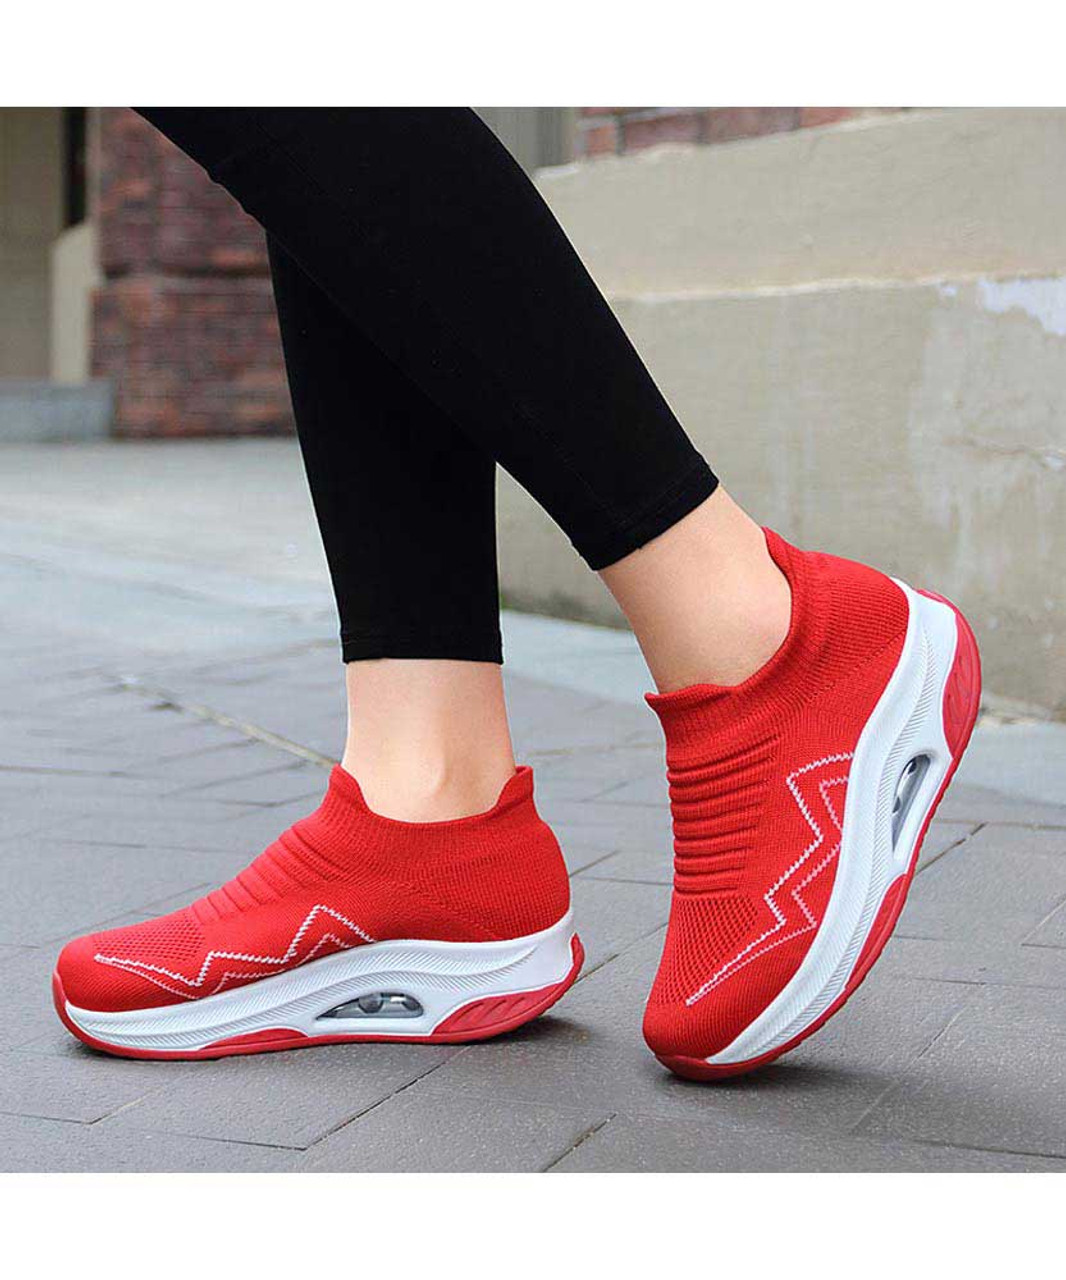 Red flyknit stripe sock like slip on rocker bottom sneaker | Womens ...